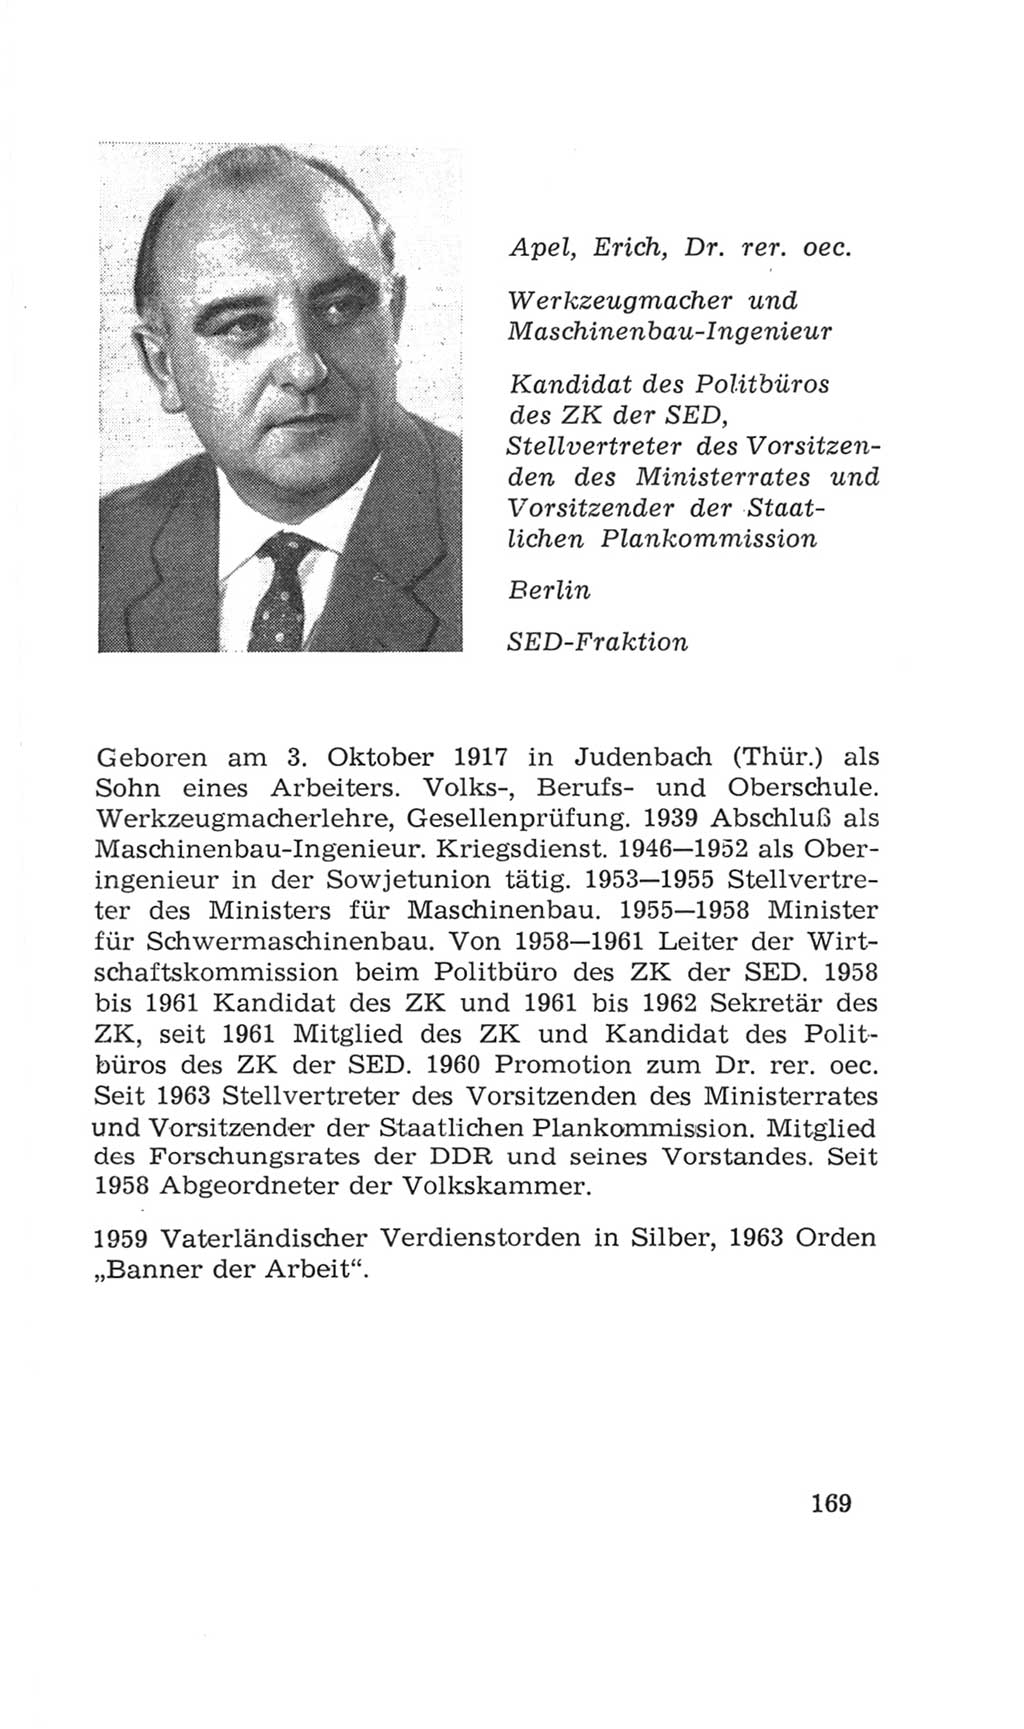 Volkskammer (VK) der Deutschen Demokratischen Republik (DDR), 4. Wahlperiode 1963-1967, Seite 169 (VK. DDR 4. WP. 1963-1967, S. 169)